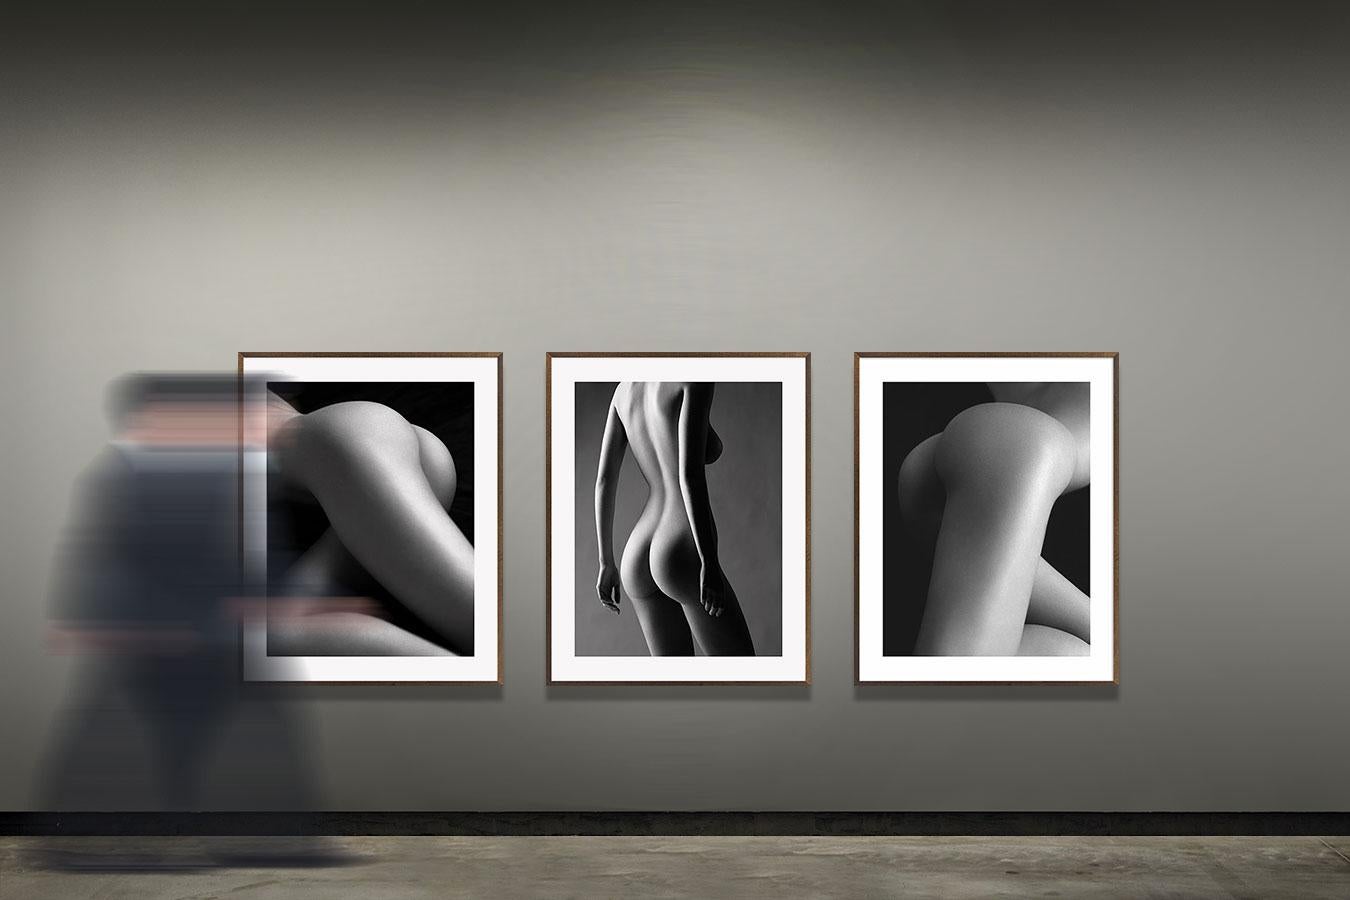 Versteigerung, noch nicht abgeschlossen, Paris (Schwarz), Black and White Photograph, von Bruno Bisang